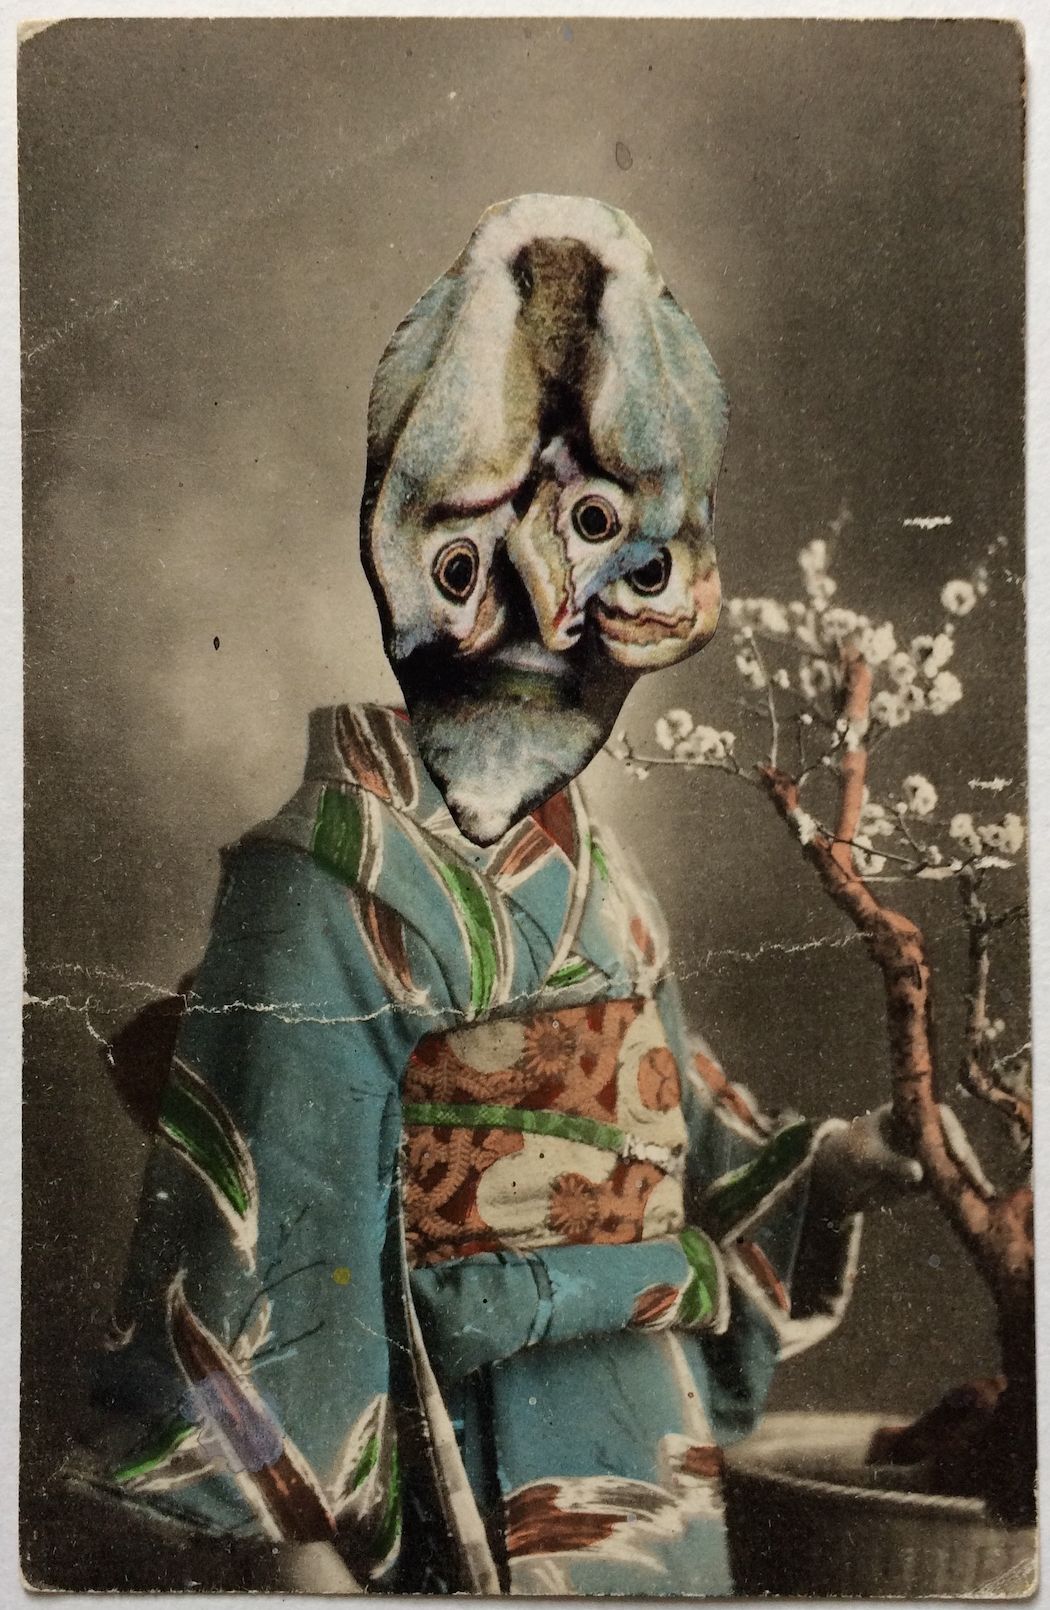 „Geisha“, 2018, Analogcollage auf alter Postkarte, 12,5x9,5 cm, © Norika Niensted